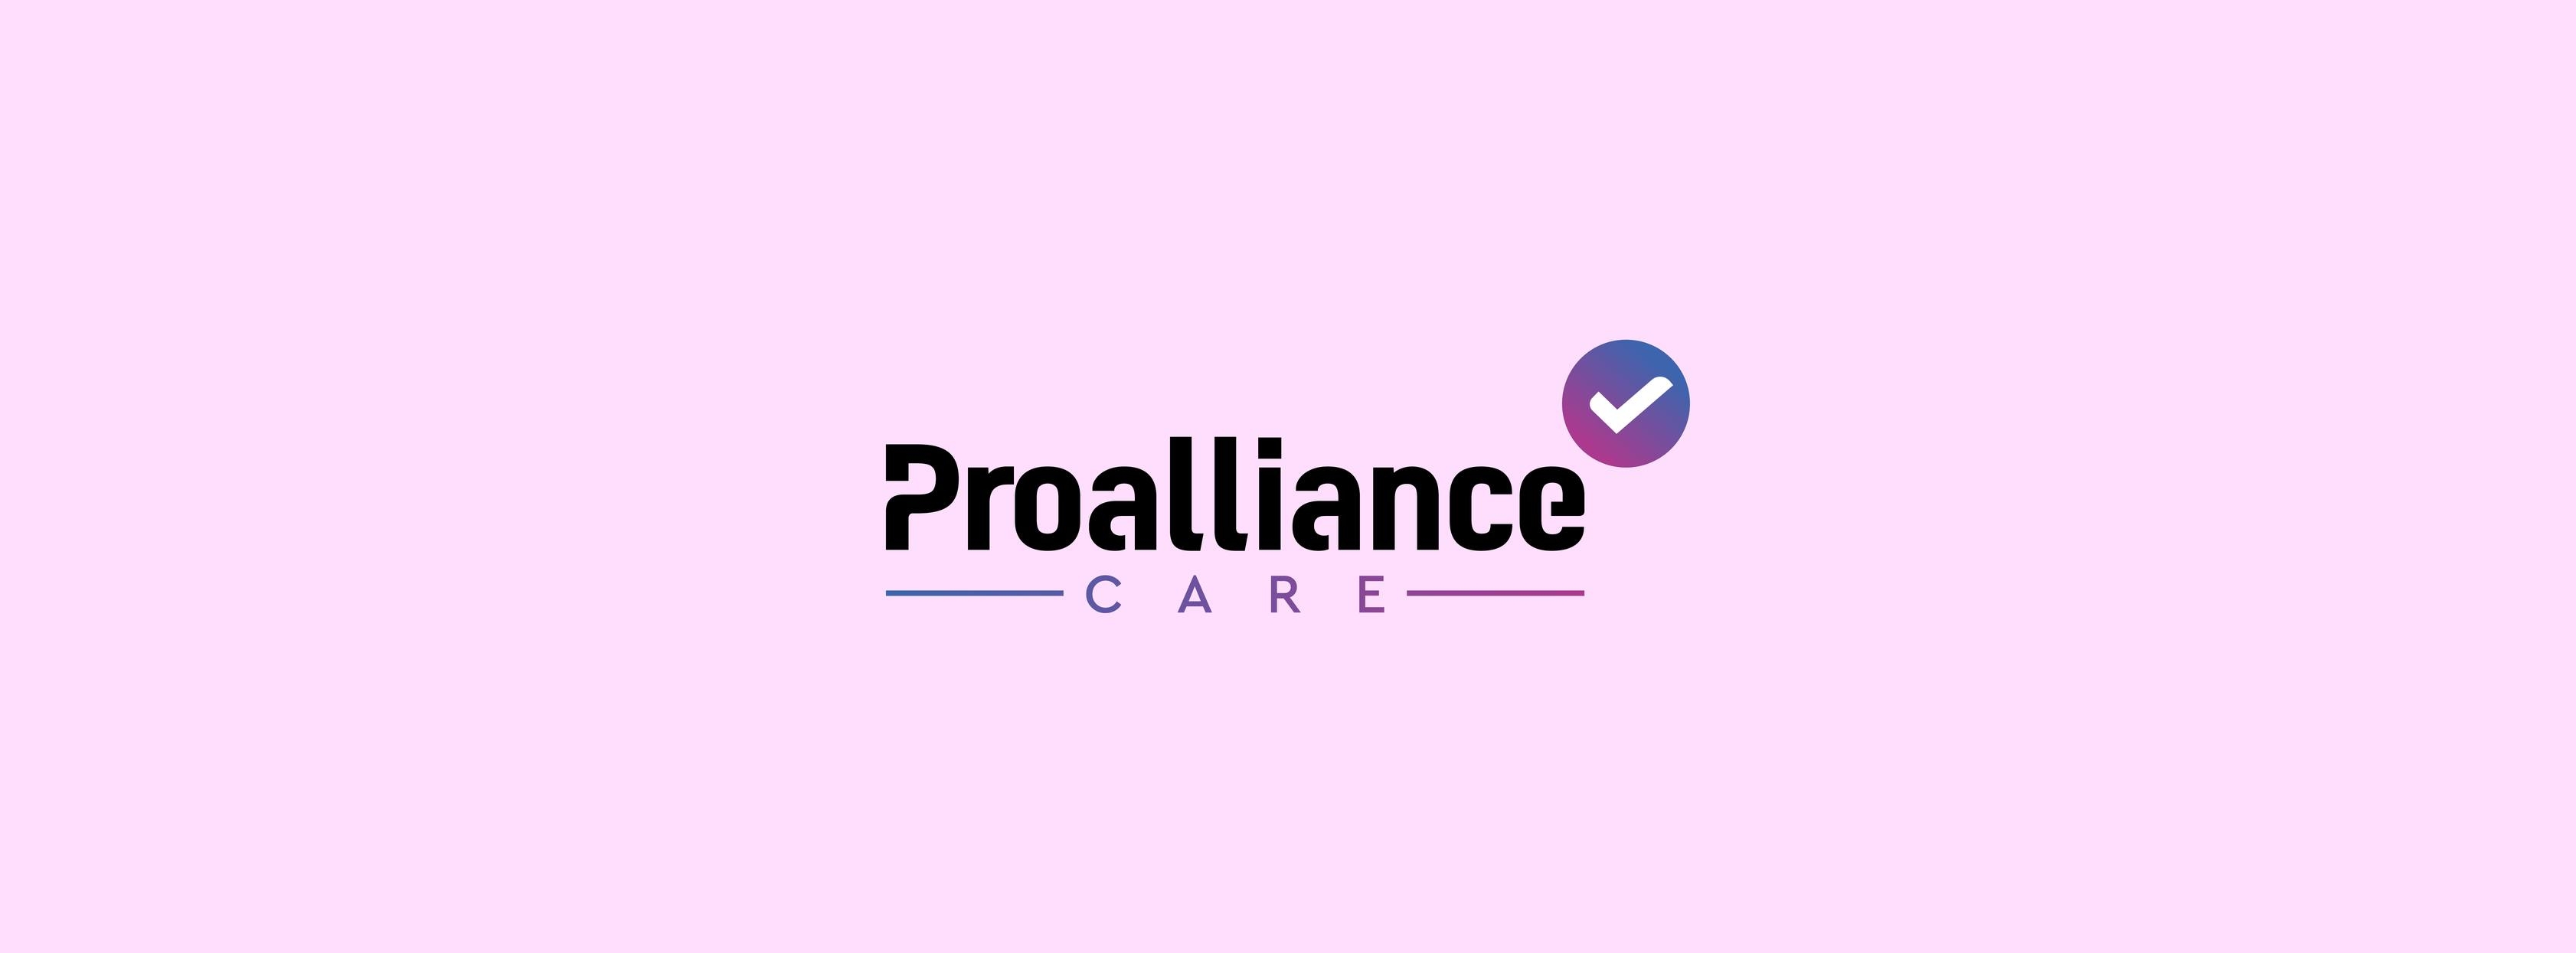 Proalliance Care